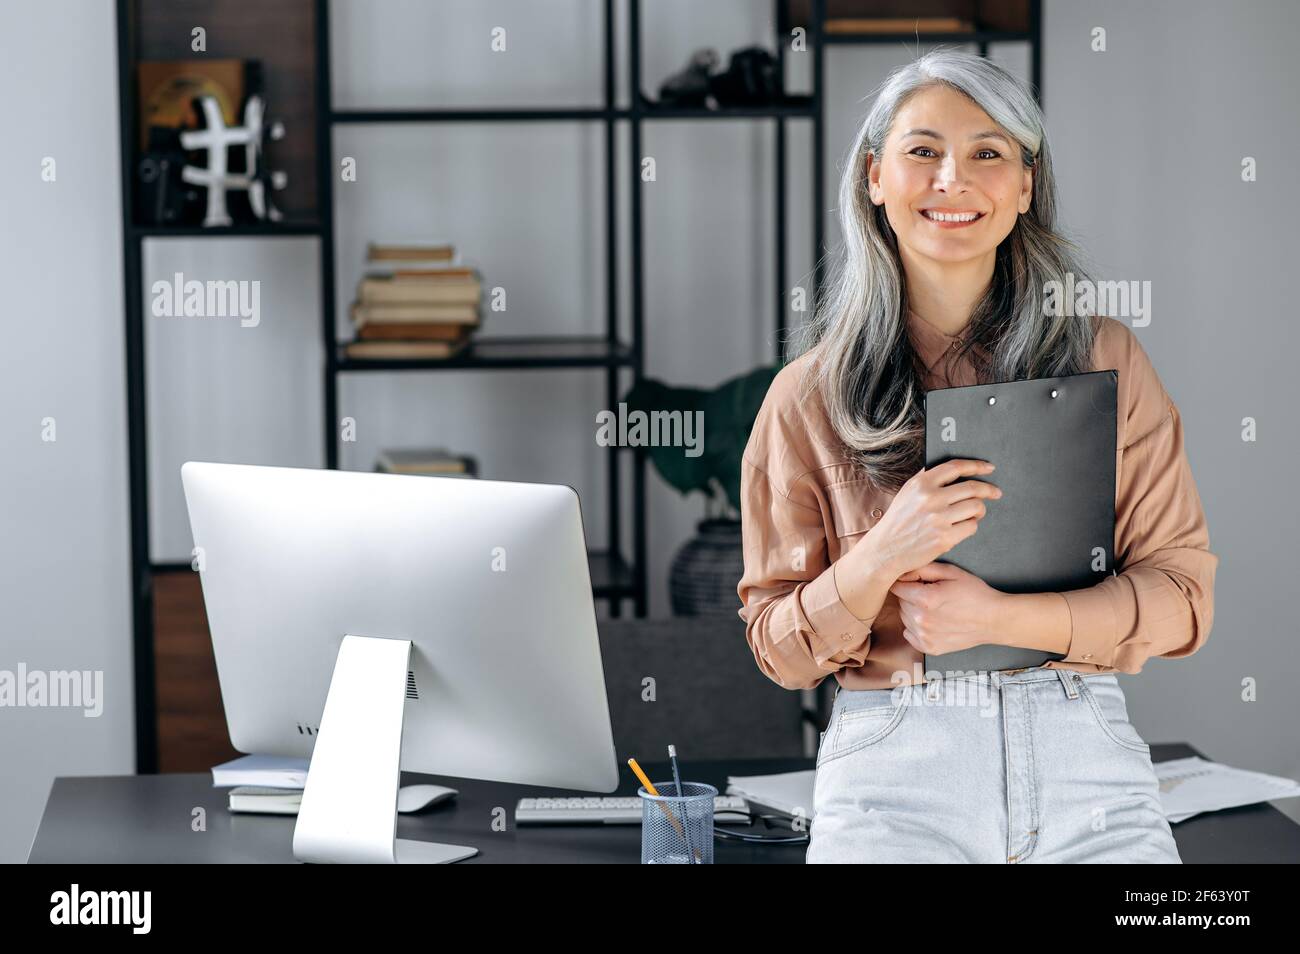 Porträt einer erfolgreichen, grauhaarigen asiatischen Geschäftsfrau mittleren Alters, die im modernen Büro steht, in stilvoller Kleidung gekleidet, Ordner in den Händen hält, die Kamera anschaut und freundlich lächelt Stockfoto